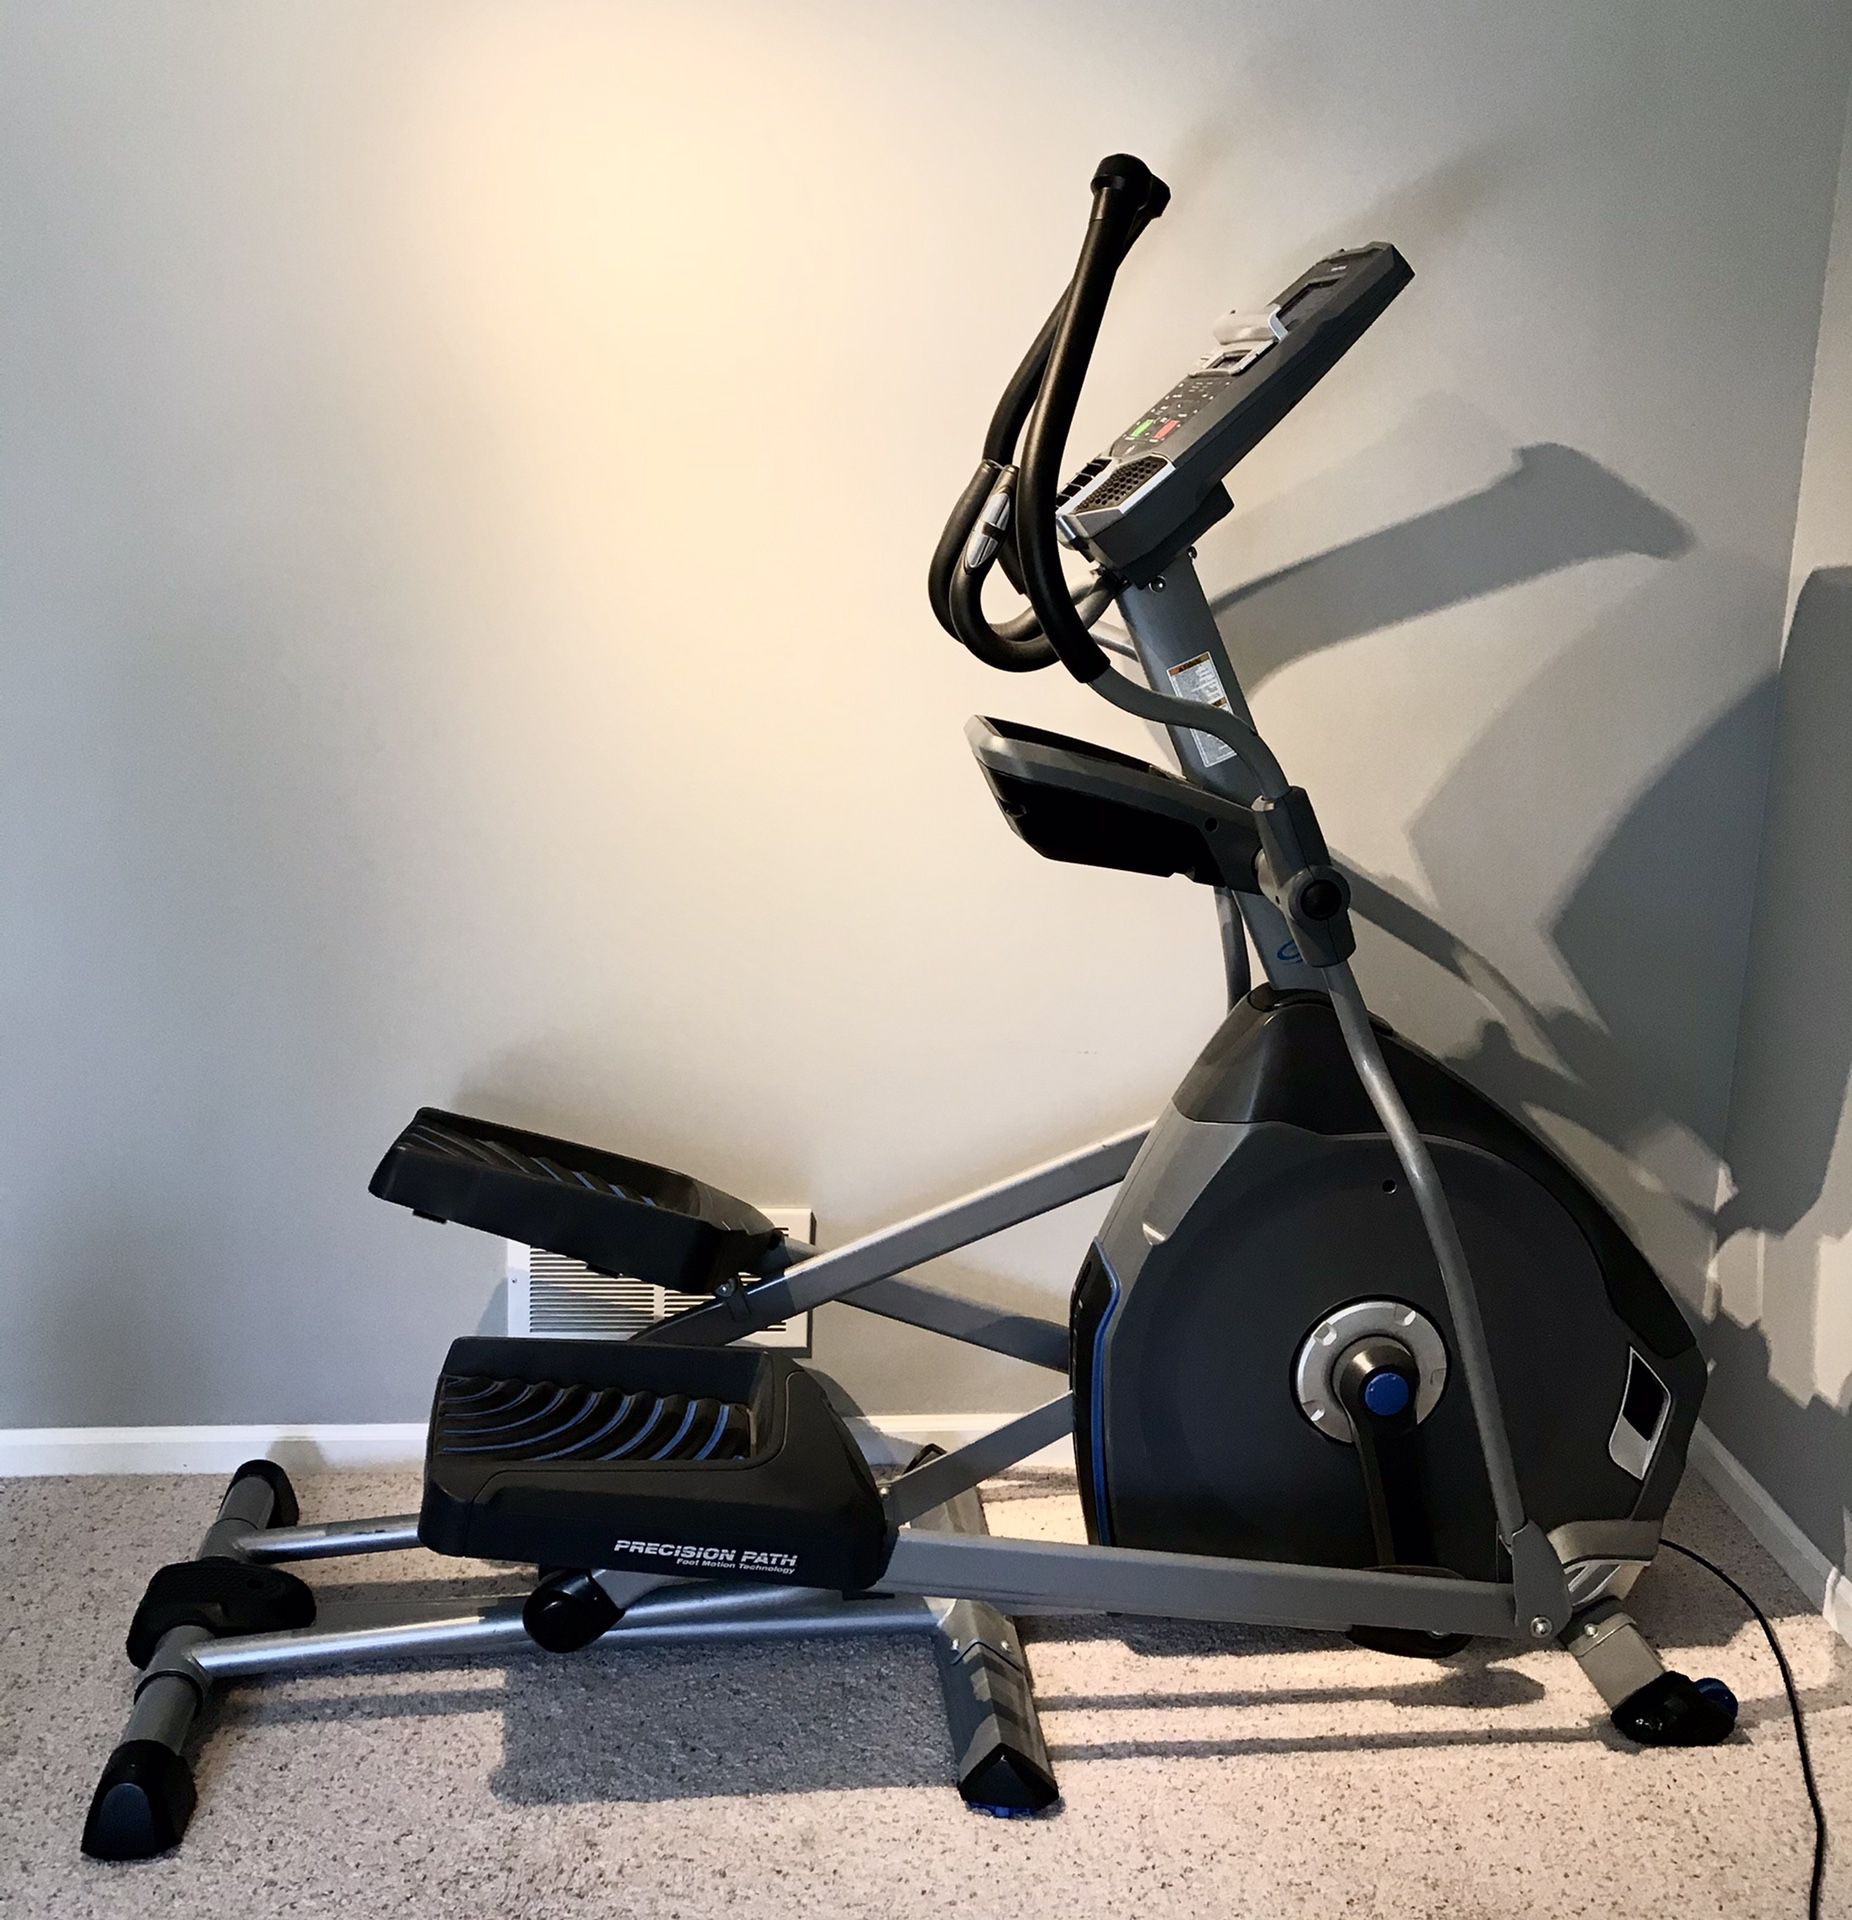 Gym-quality elliptical